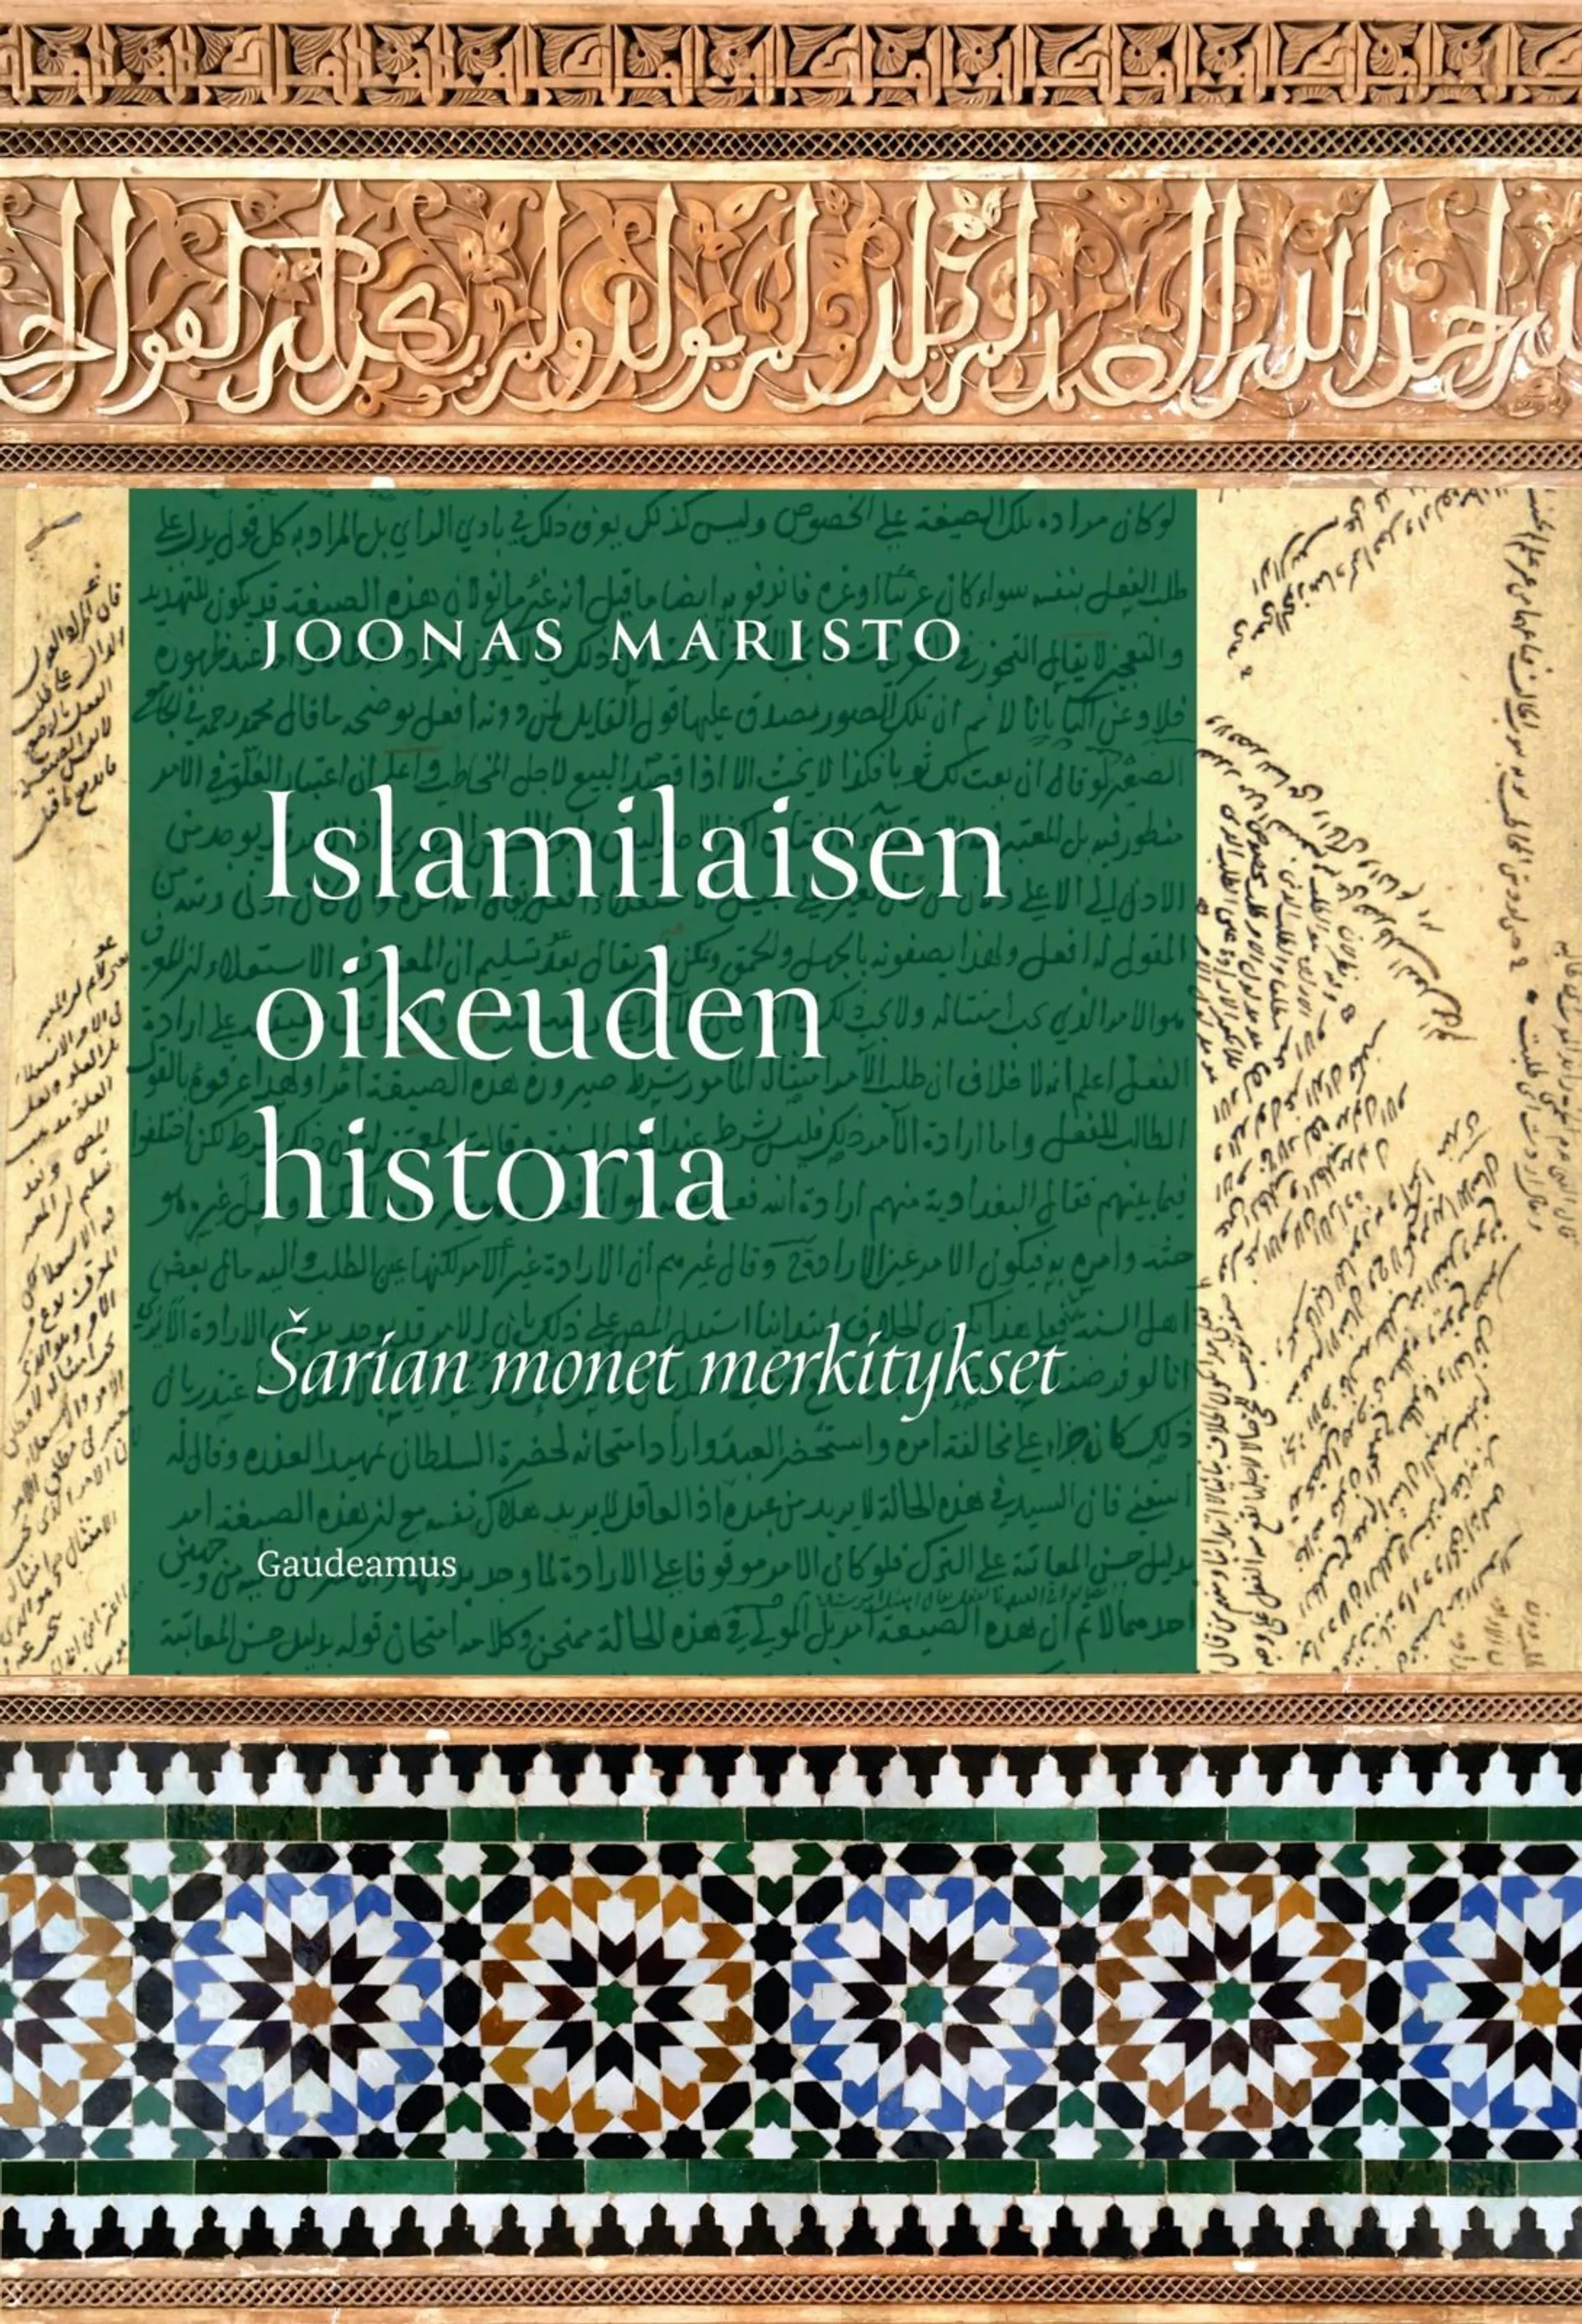 Maristo, Islamilaisen oikeuden historia - Šarian monet merkitykset